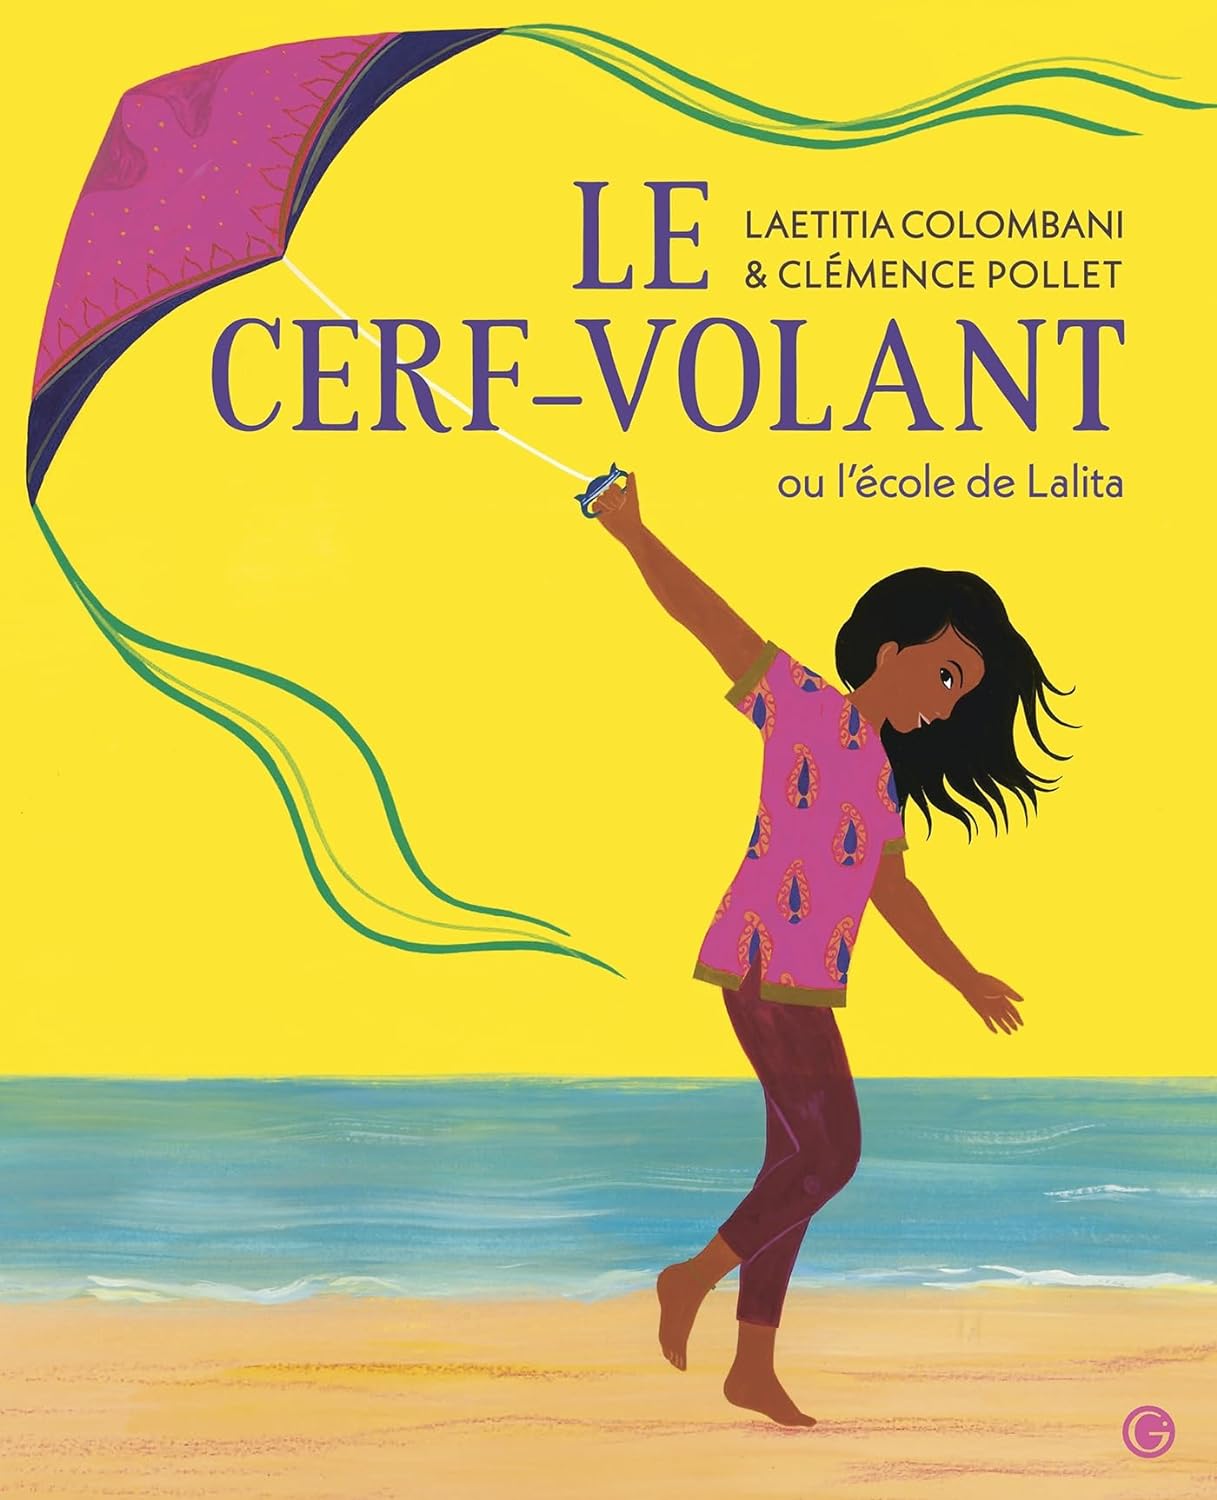 Librairie Les Cerfs-Volants on Instagram: Pourquoi la librairie